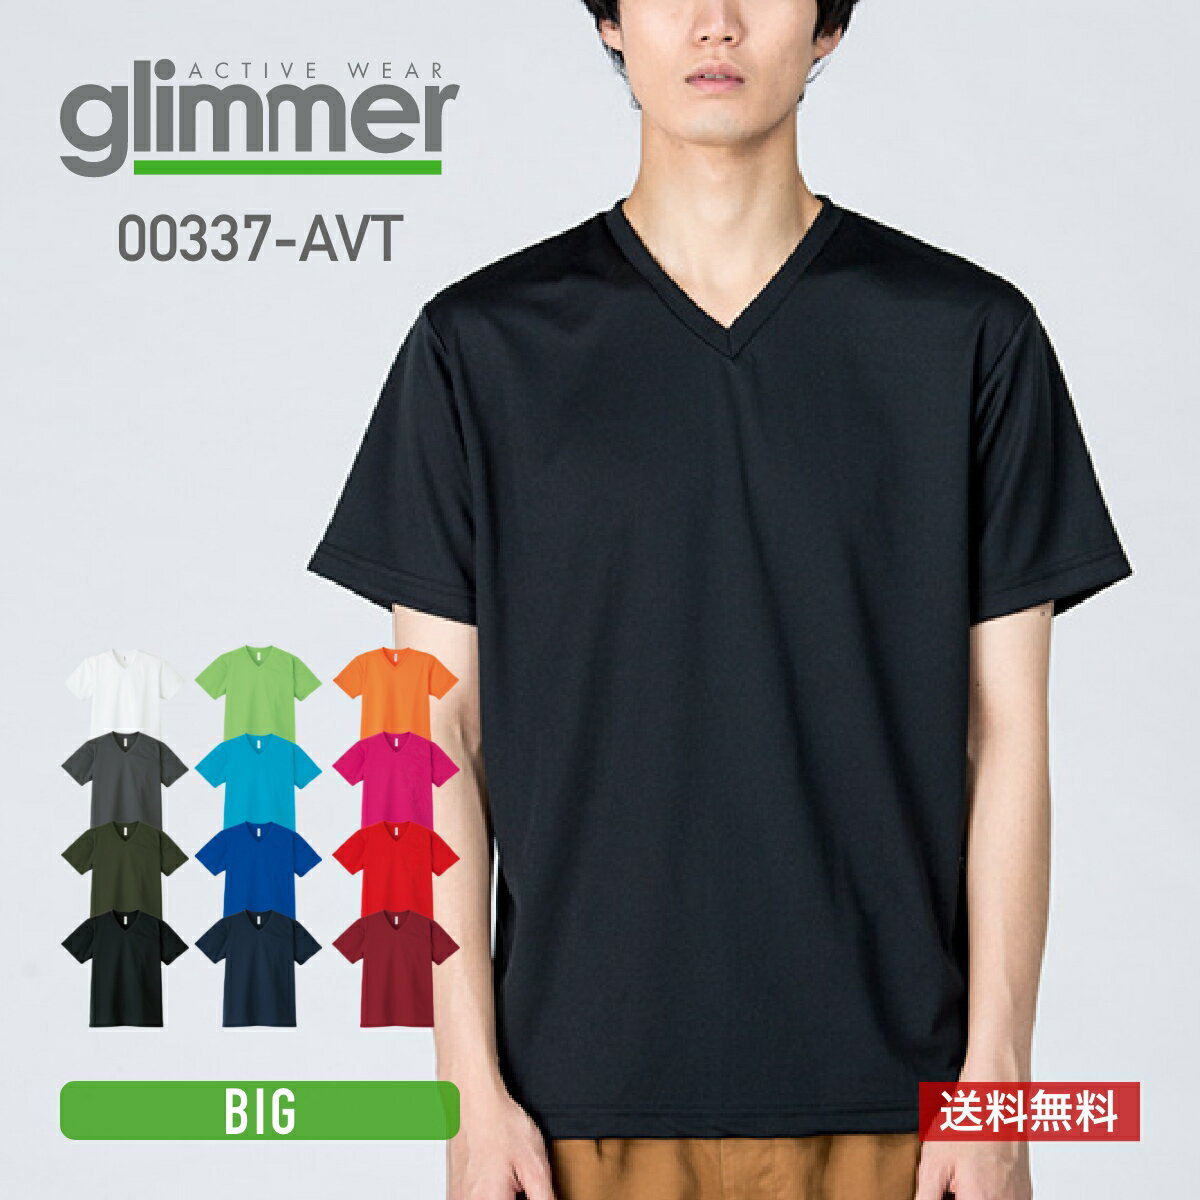 速乾 tシャツ glimmer グリマー 4.4オンス ドライ Vネック Tシャツ 00337-AVT 337avt 吸汗 速乾 トレーニング スポー…